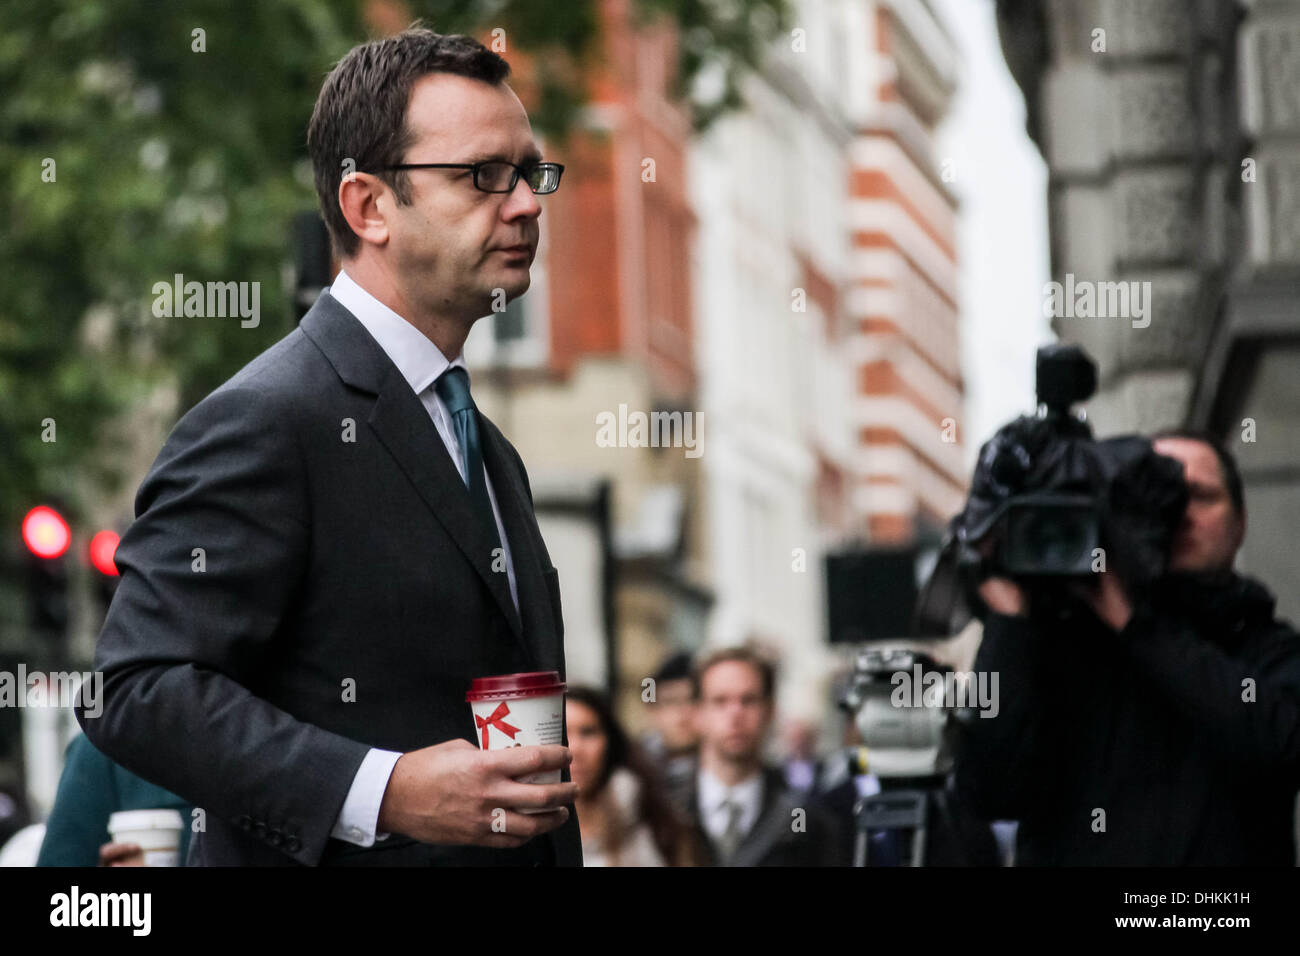 Londres, Royaume-Uni. 12 novembre 2013. Andy Coulson attend d'entrer en cour le téléphone continue à procès hacking Old Bailey. Crédit : Guy Josse/Alamy Live News Banque D'Images